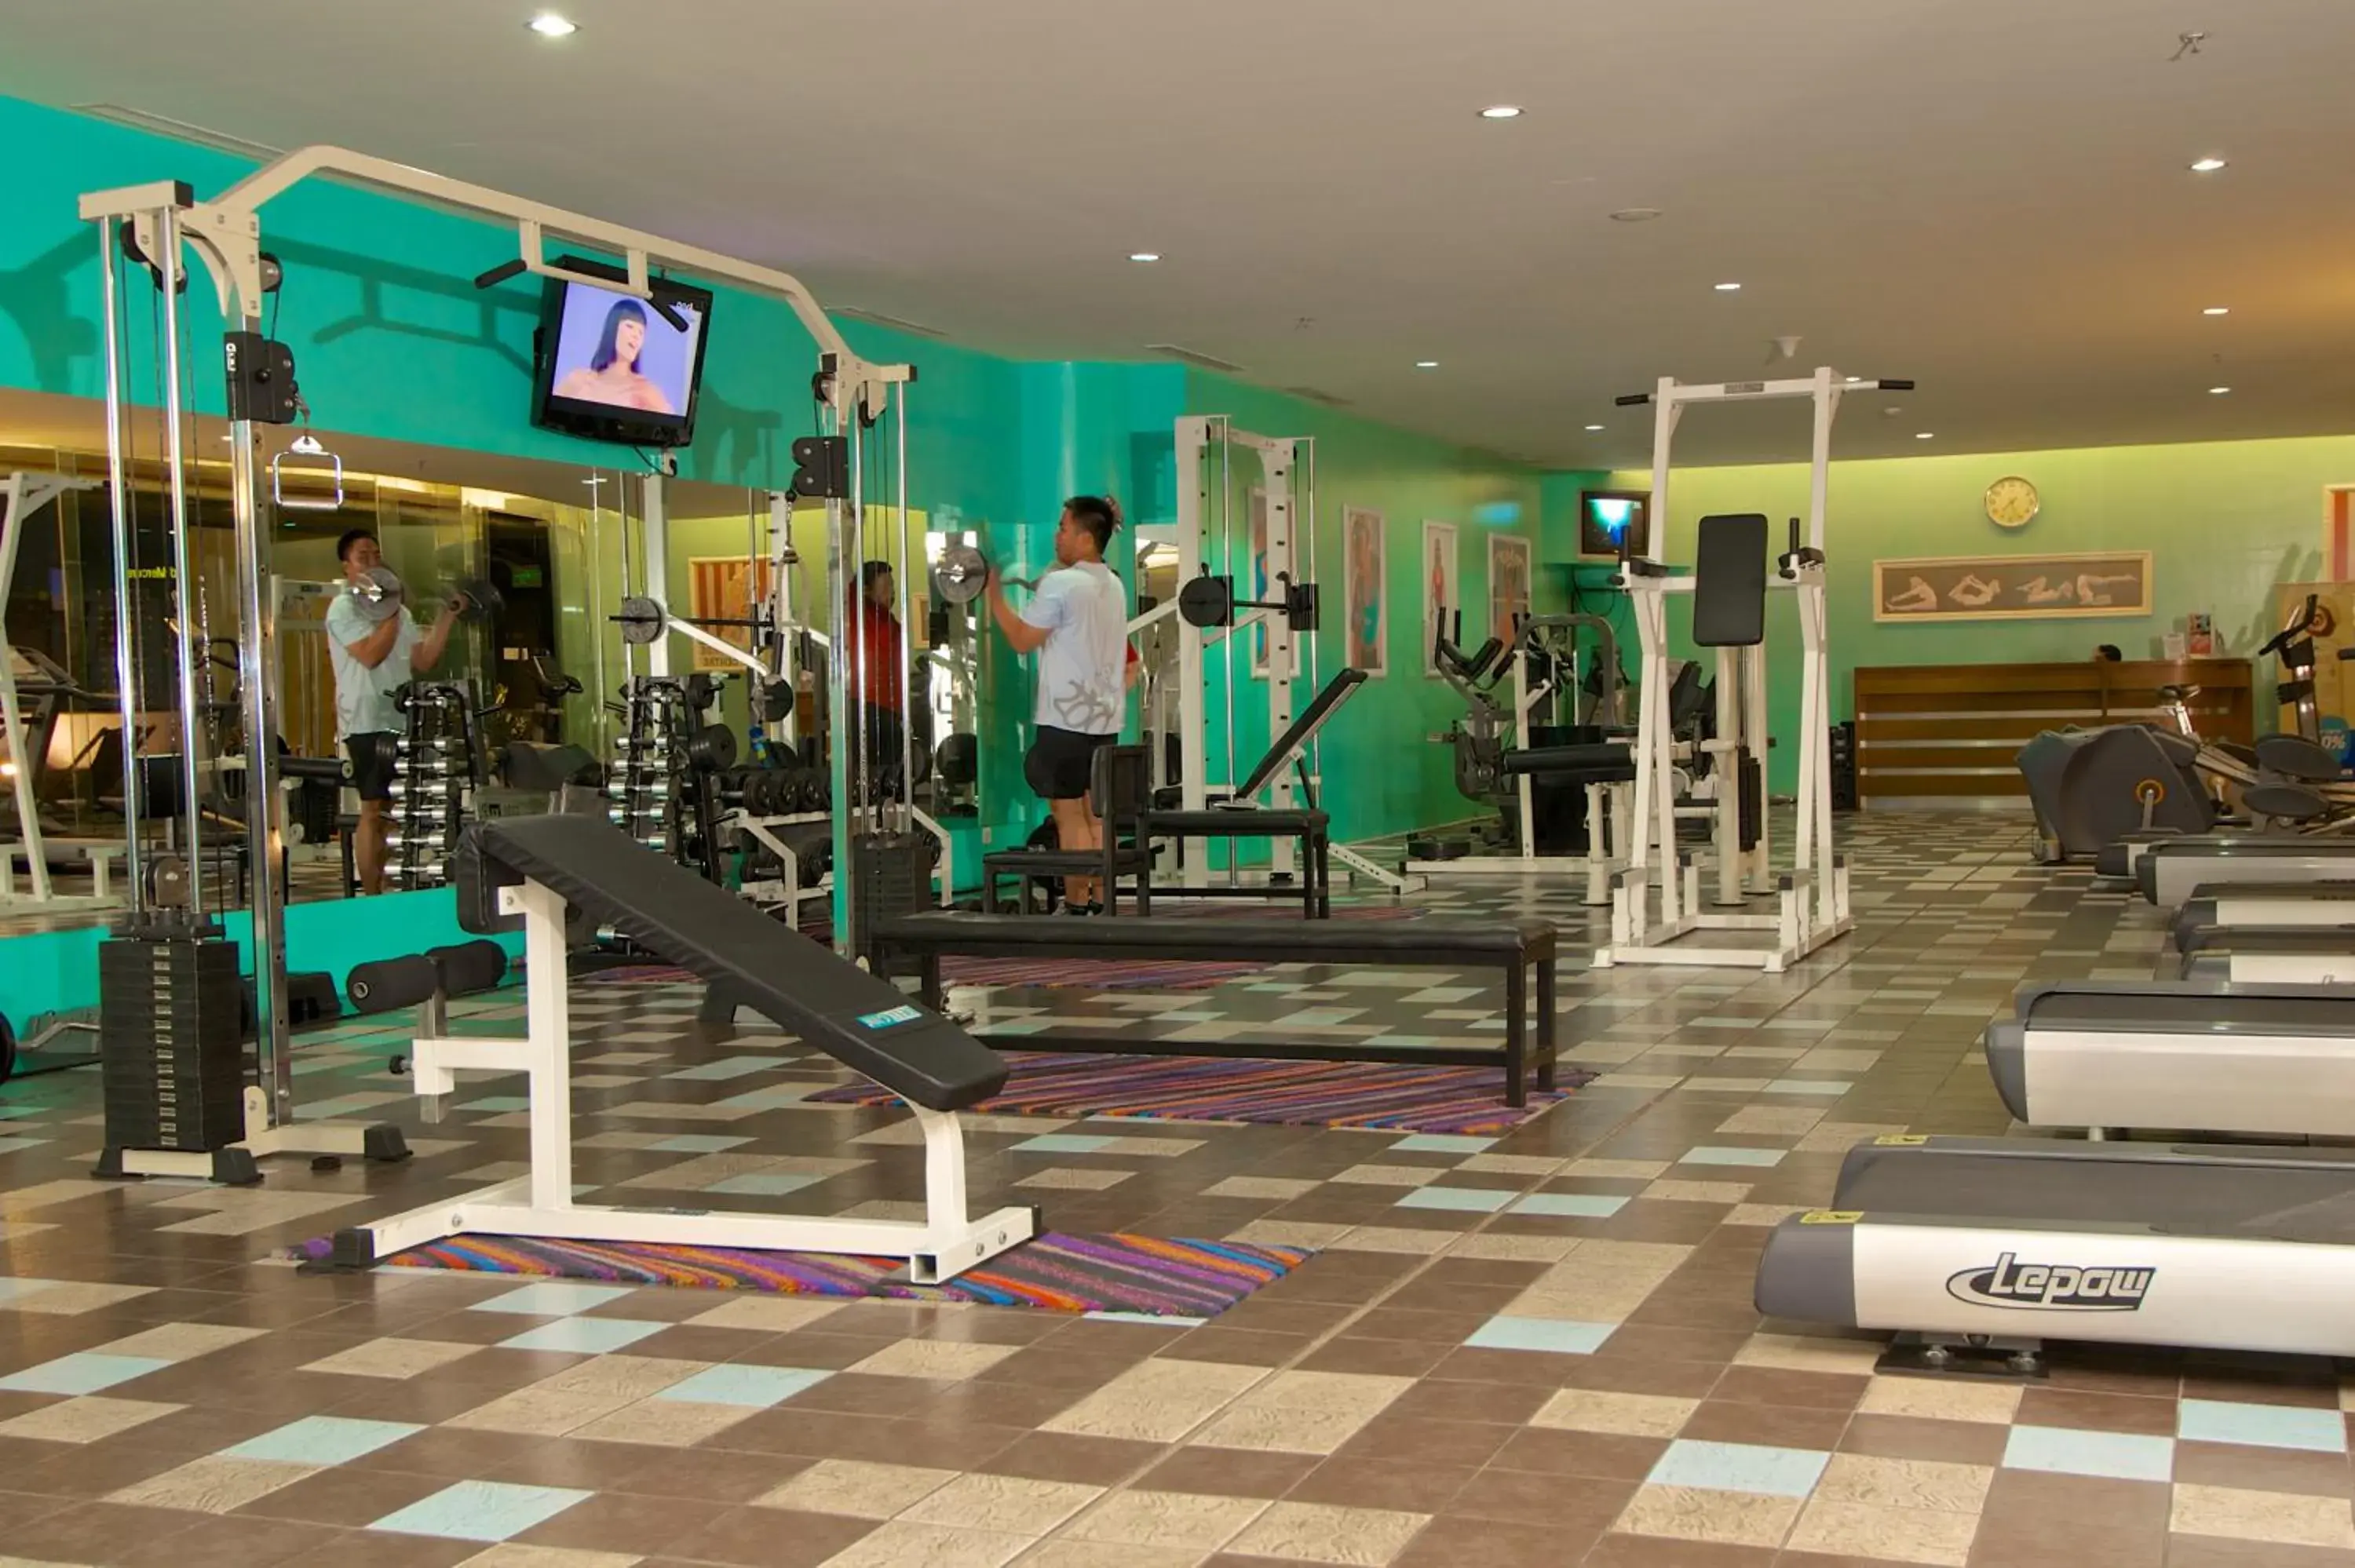 Fitness centre/facilities, Fitness Center/Facilities in Merlynn Park Hotel